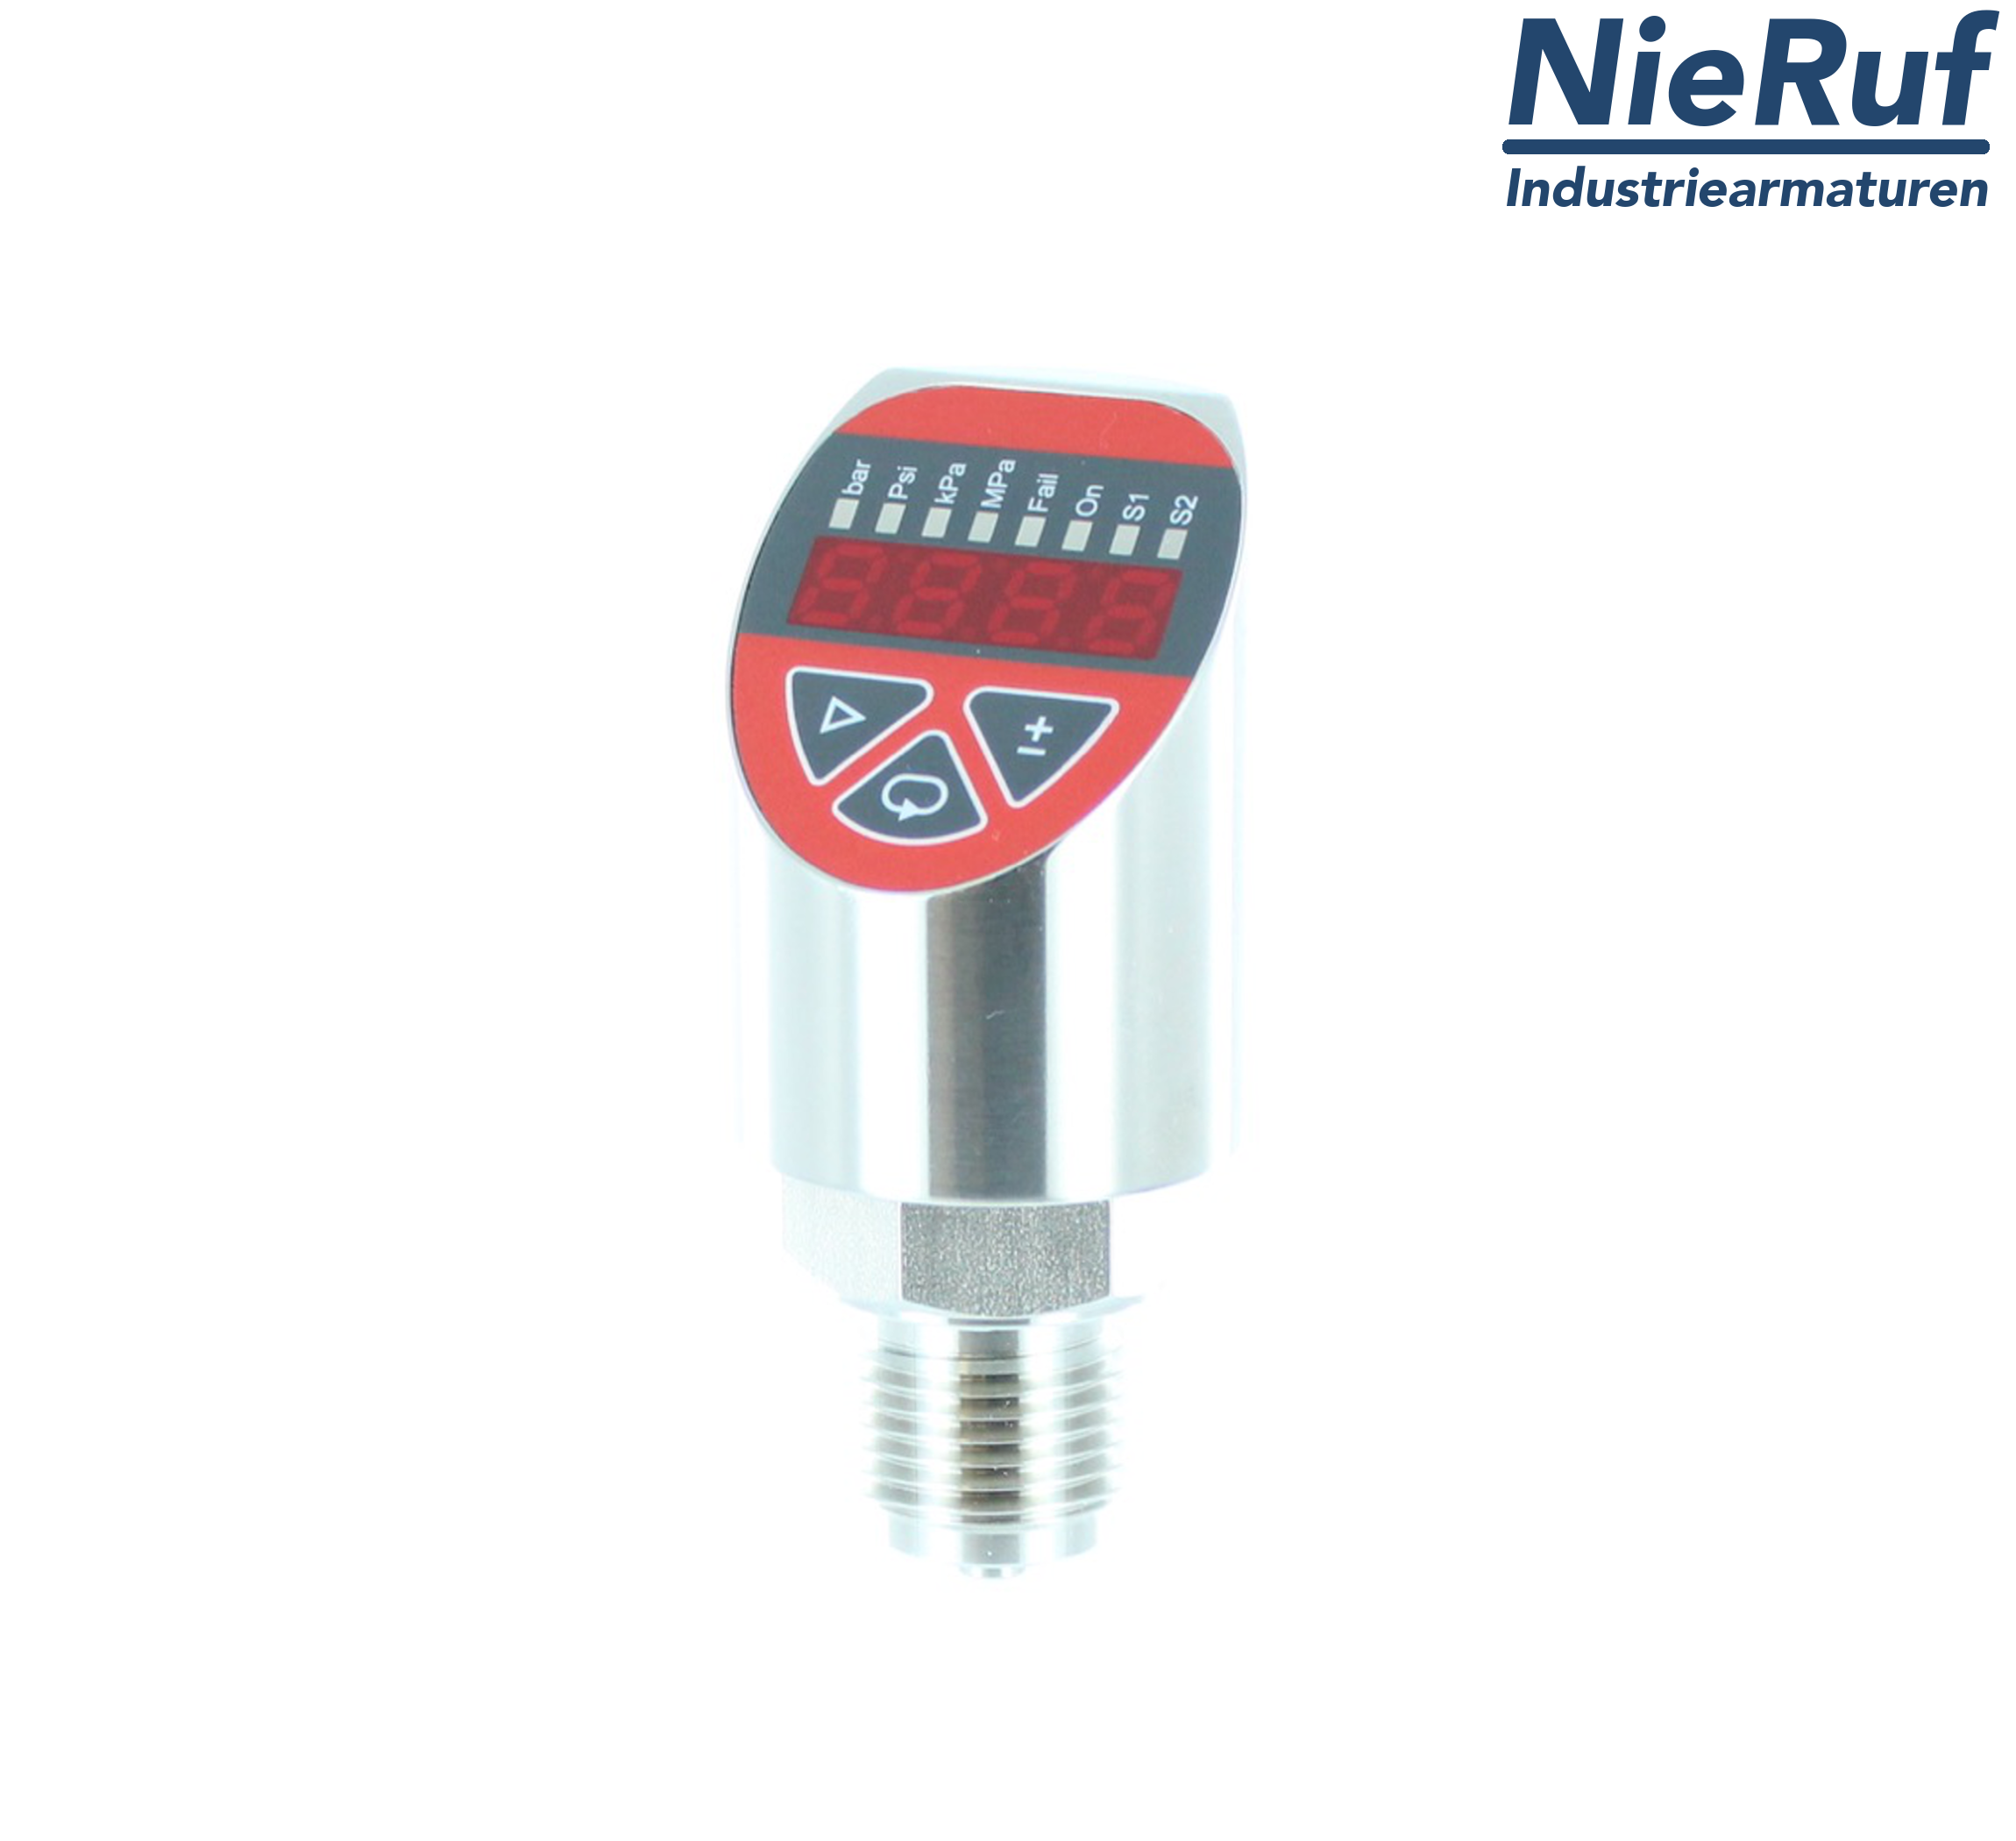 digital pressure sensor G 1/2" B IB 4-wire: 1xPNP, 1x4 - 20mA, Desina FPM 0,0 - 6,0 bar